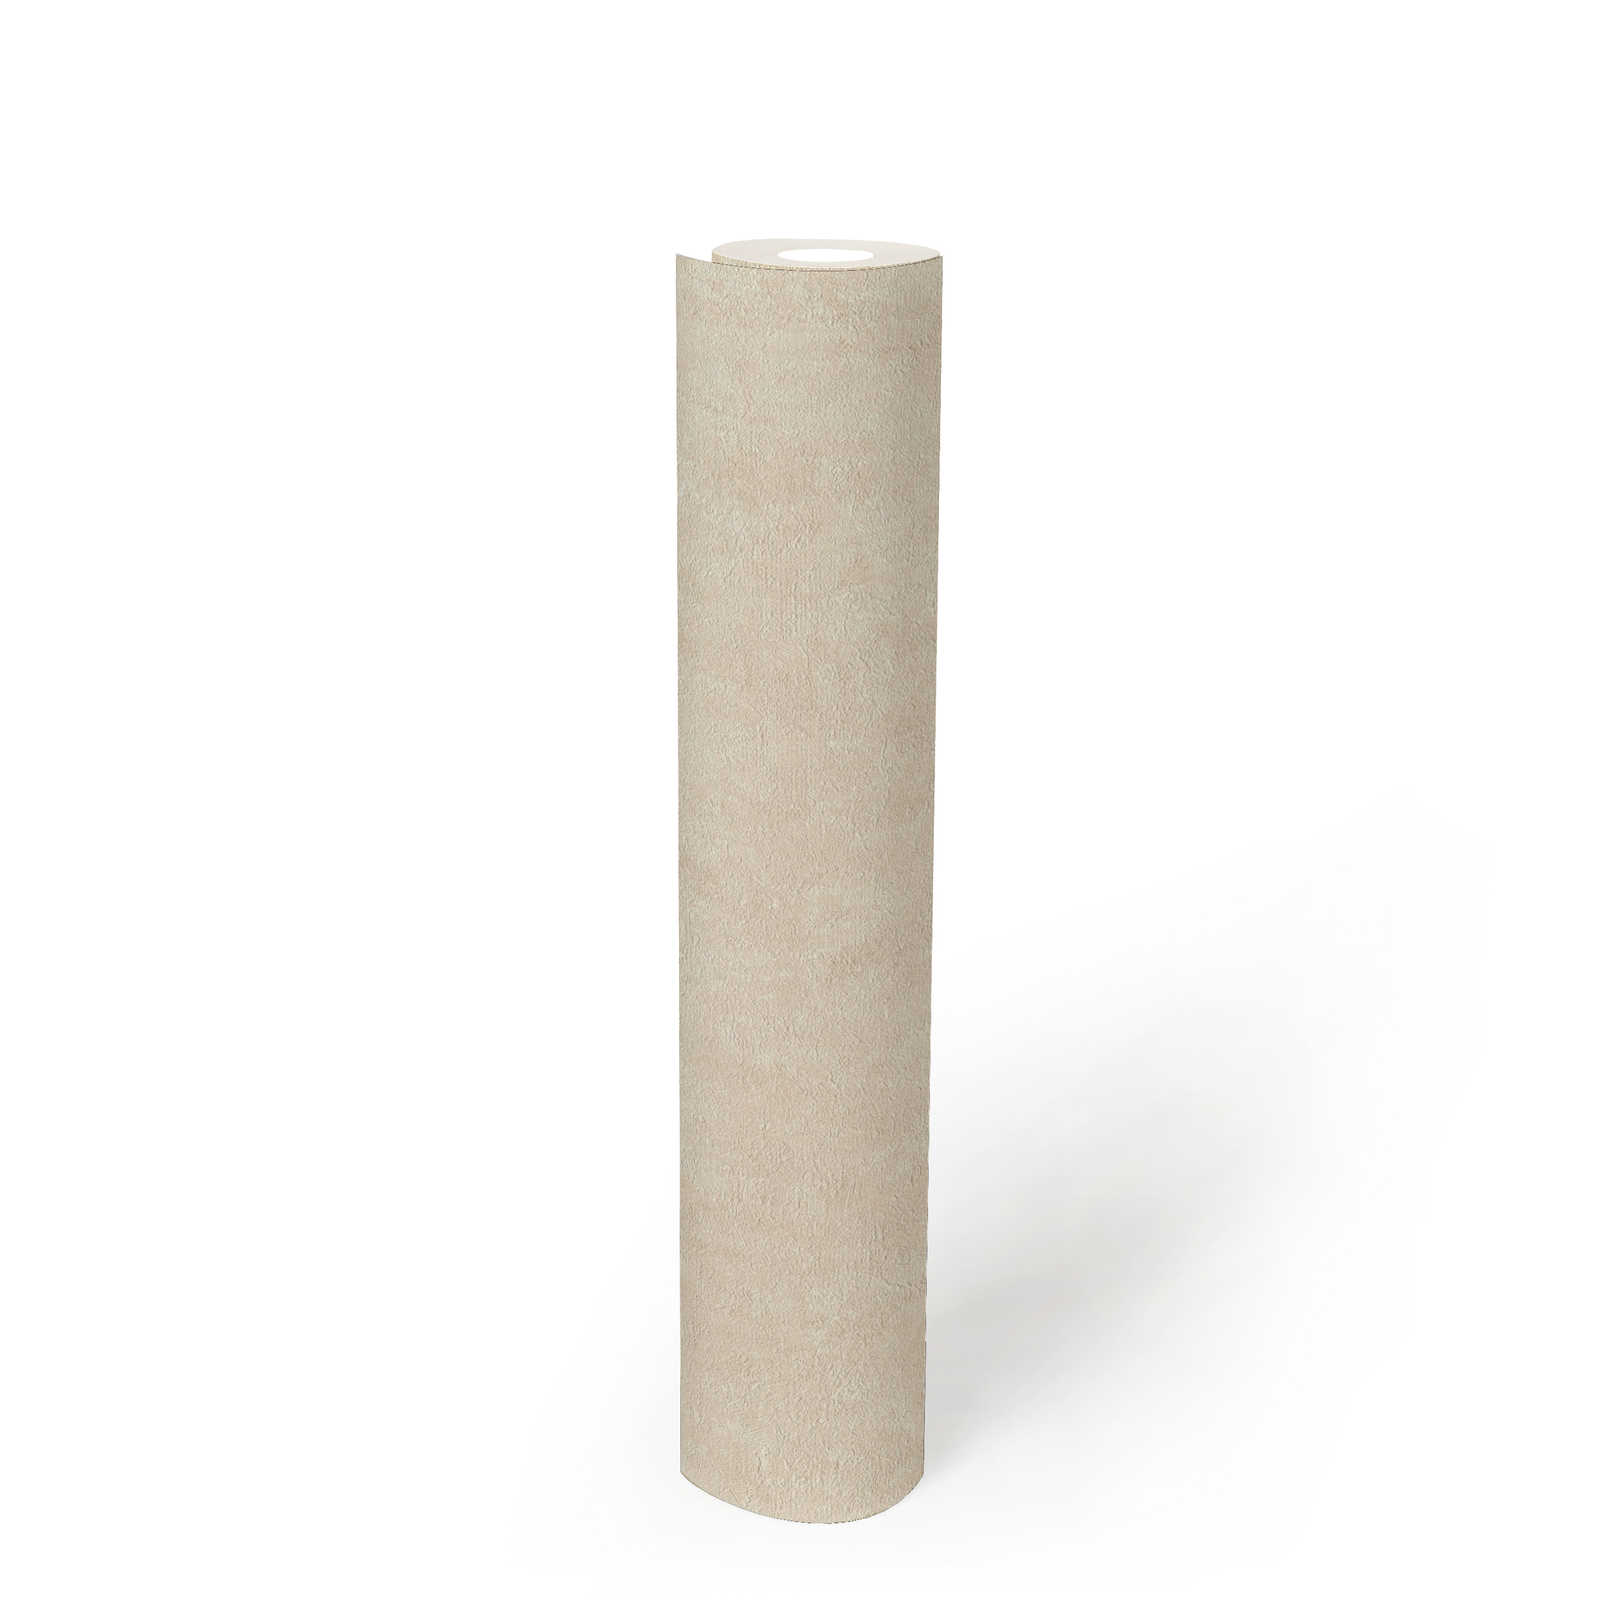             vinyle expansé intissé ivoire chiné - blanc, gris, crème
        